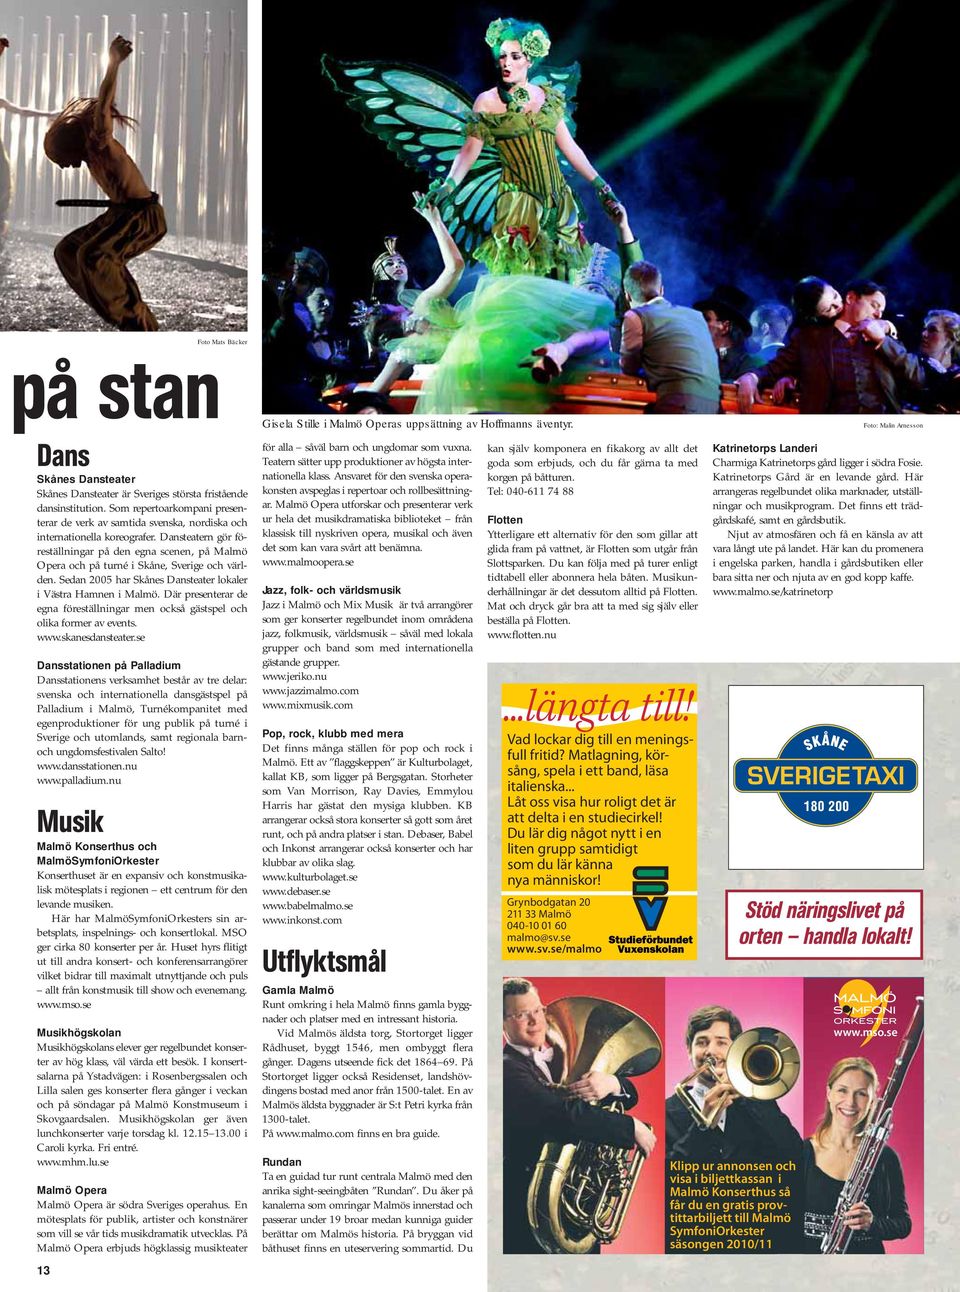 Dansteatern gör föreställningar på den egna scenen, på Malmö Opera och på turné i Skåne, Sverige och världen. Sedan 2005 har Skånes Dansteater lokaler i Västra Hamnen i Malmö.